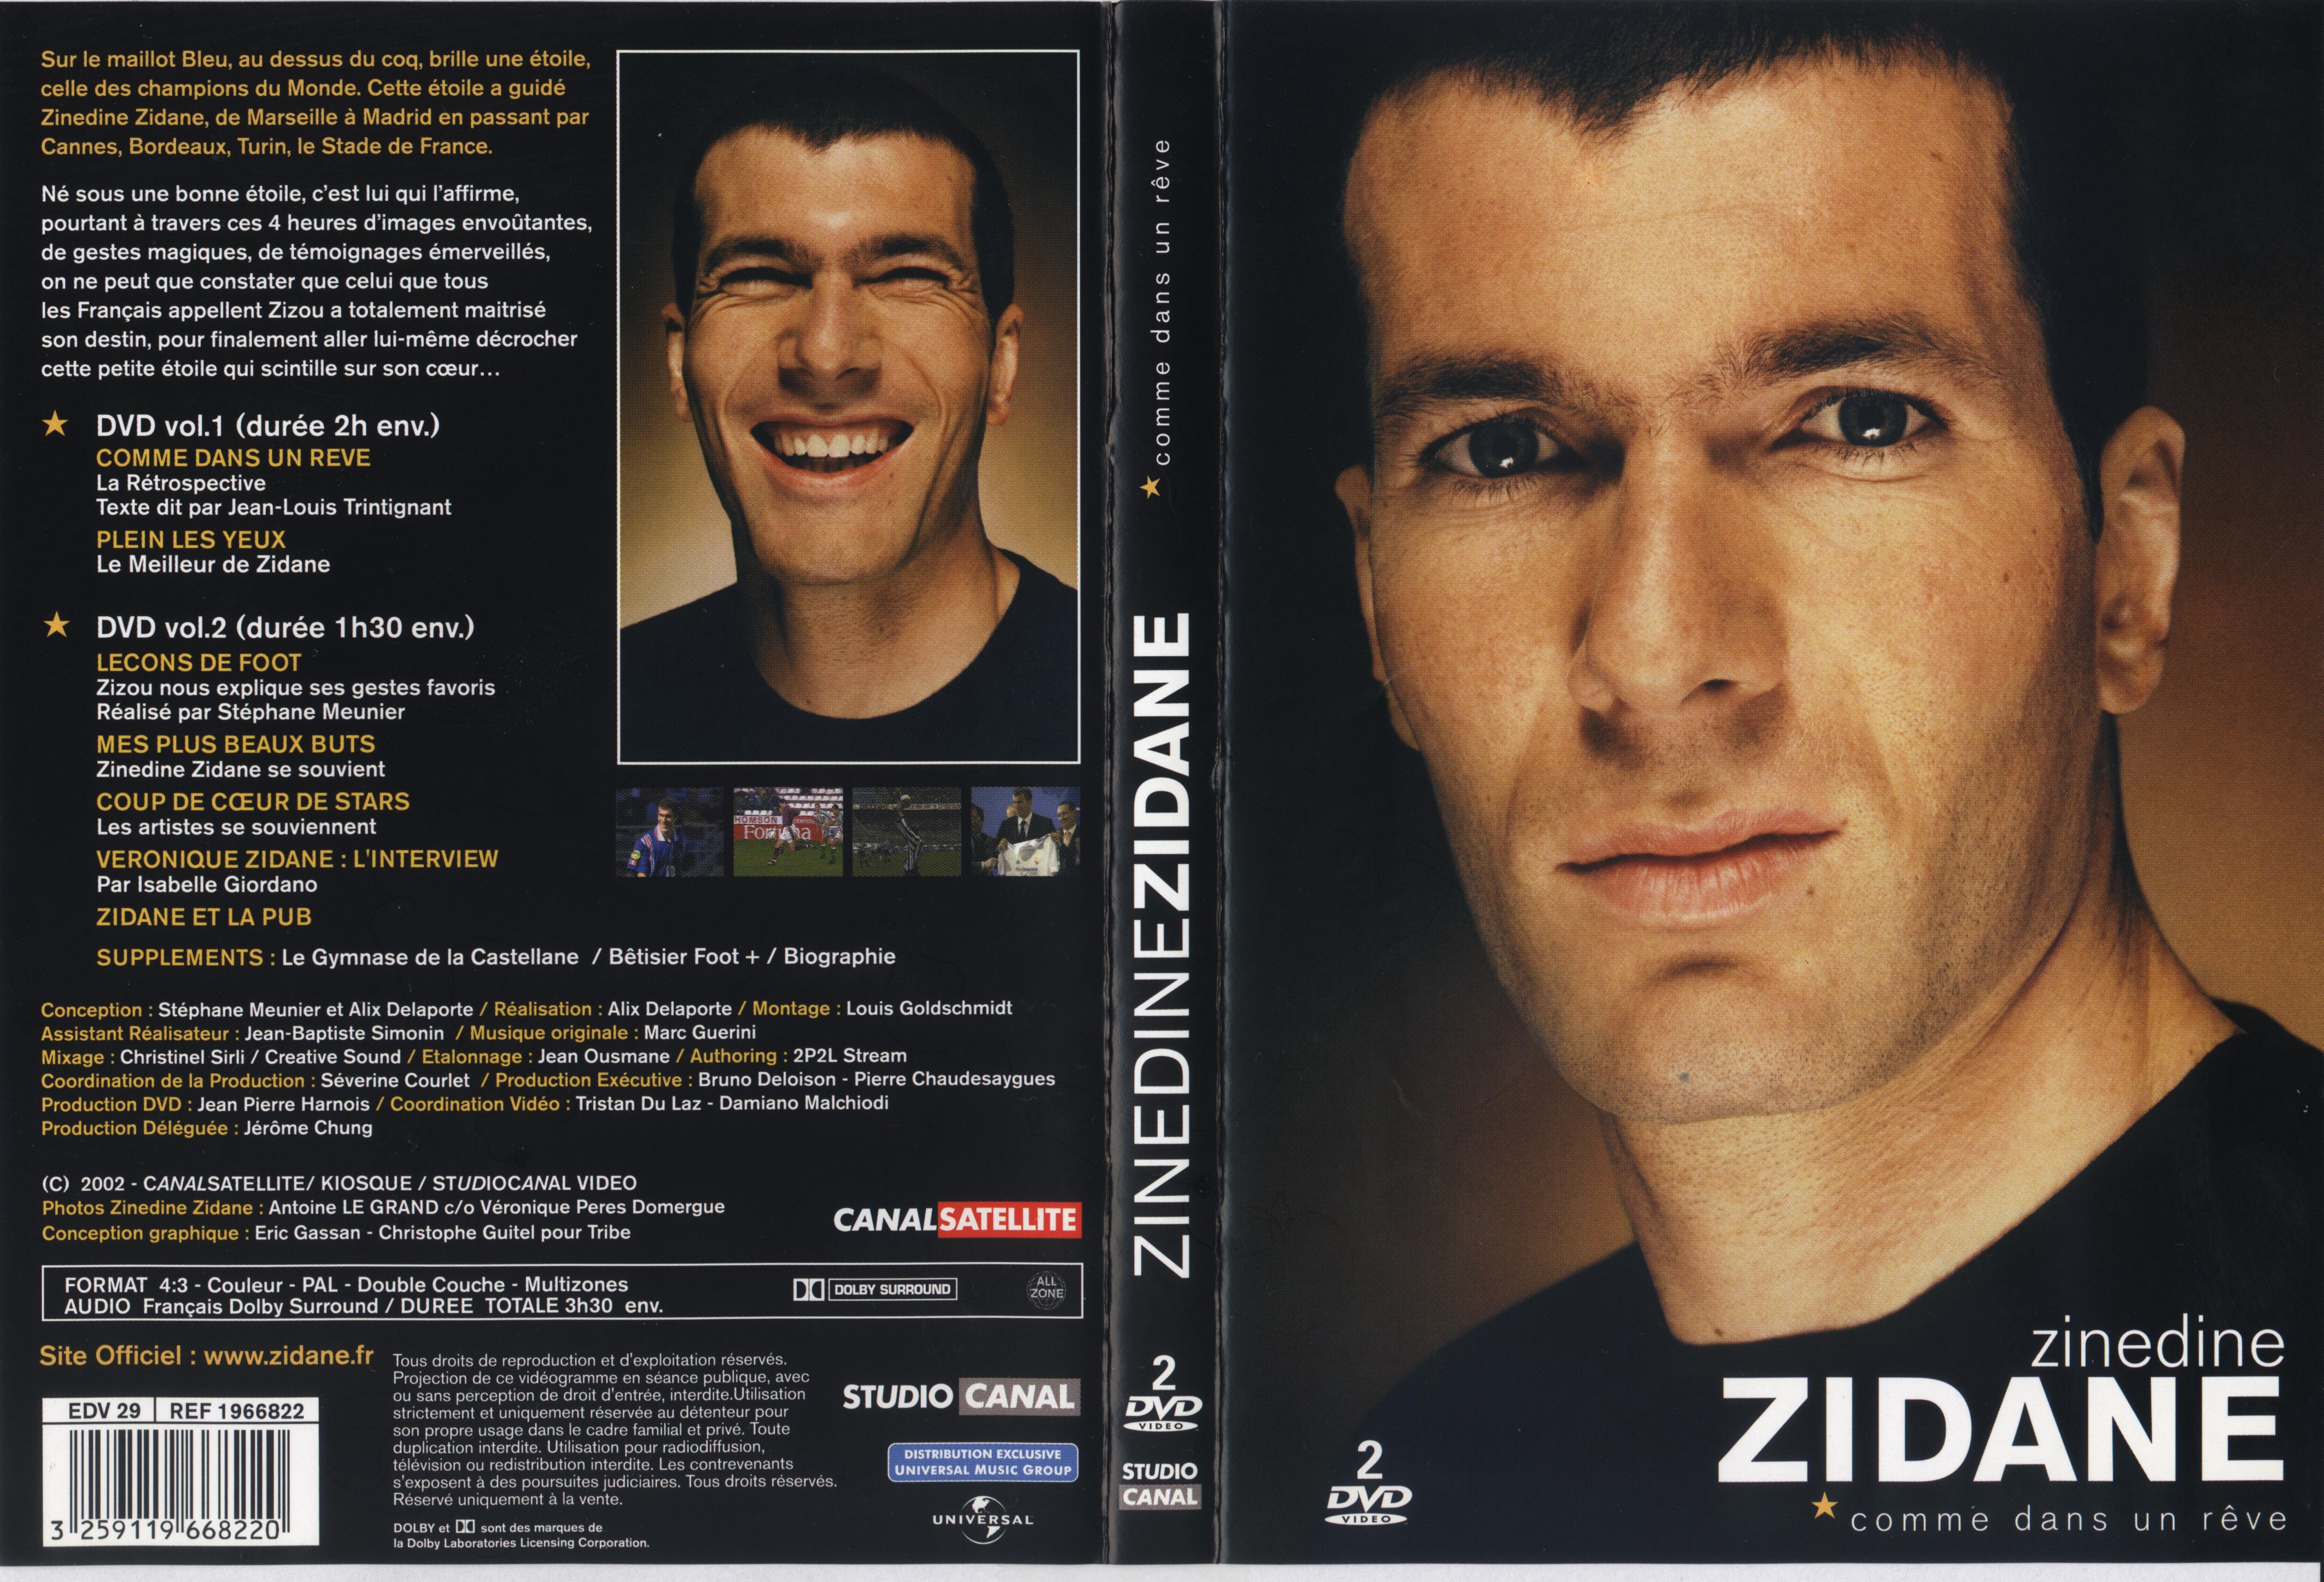 Jaquette DVD Zinedine Zidane Comme dans un reve